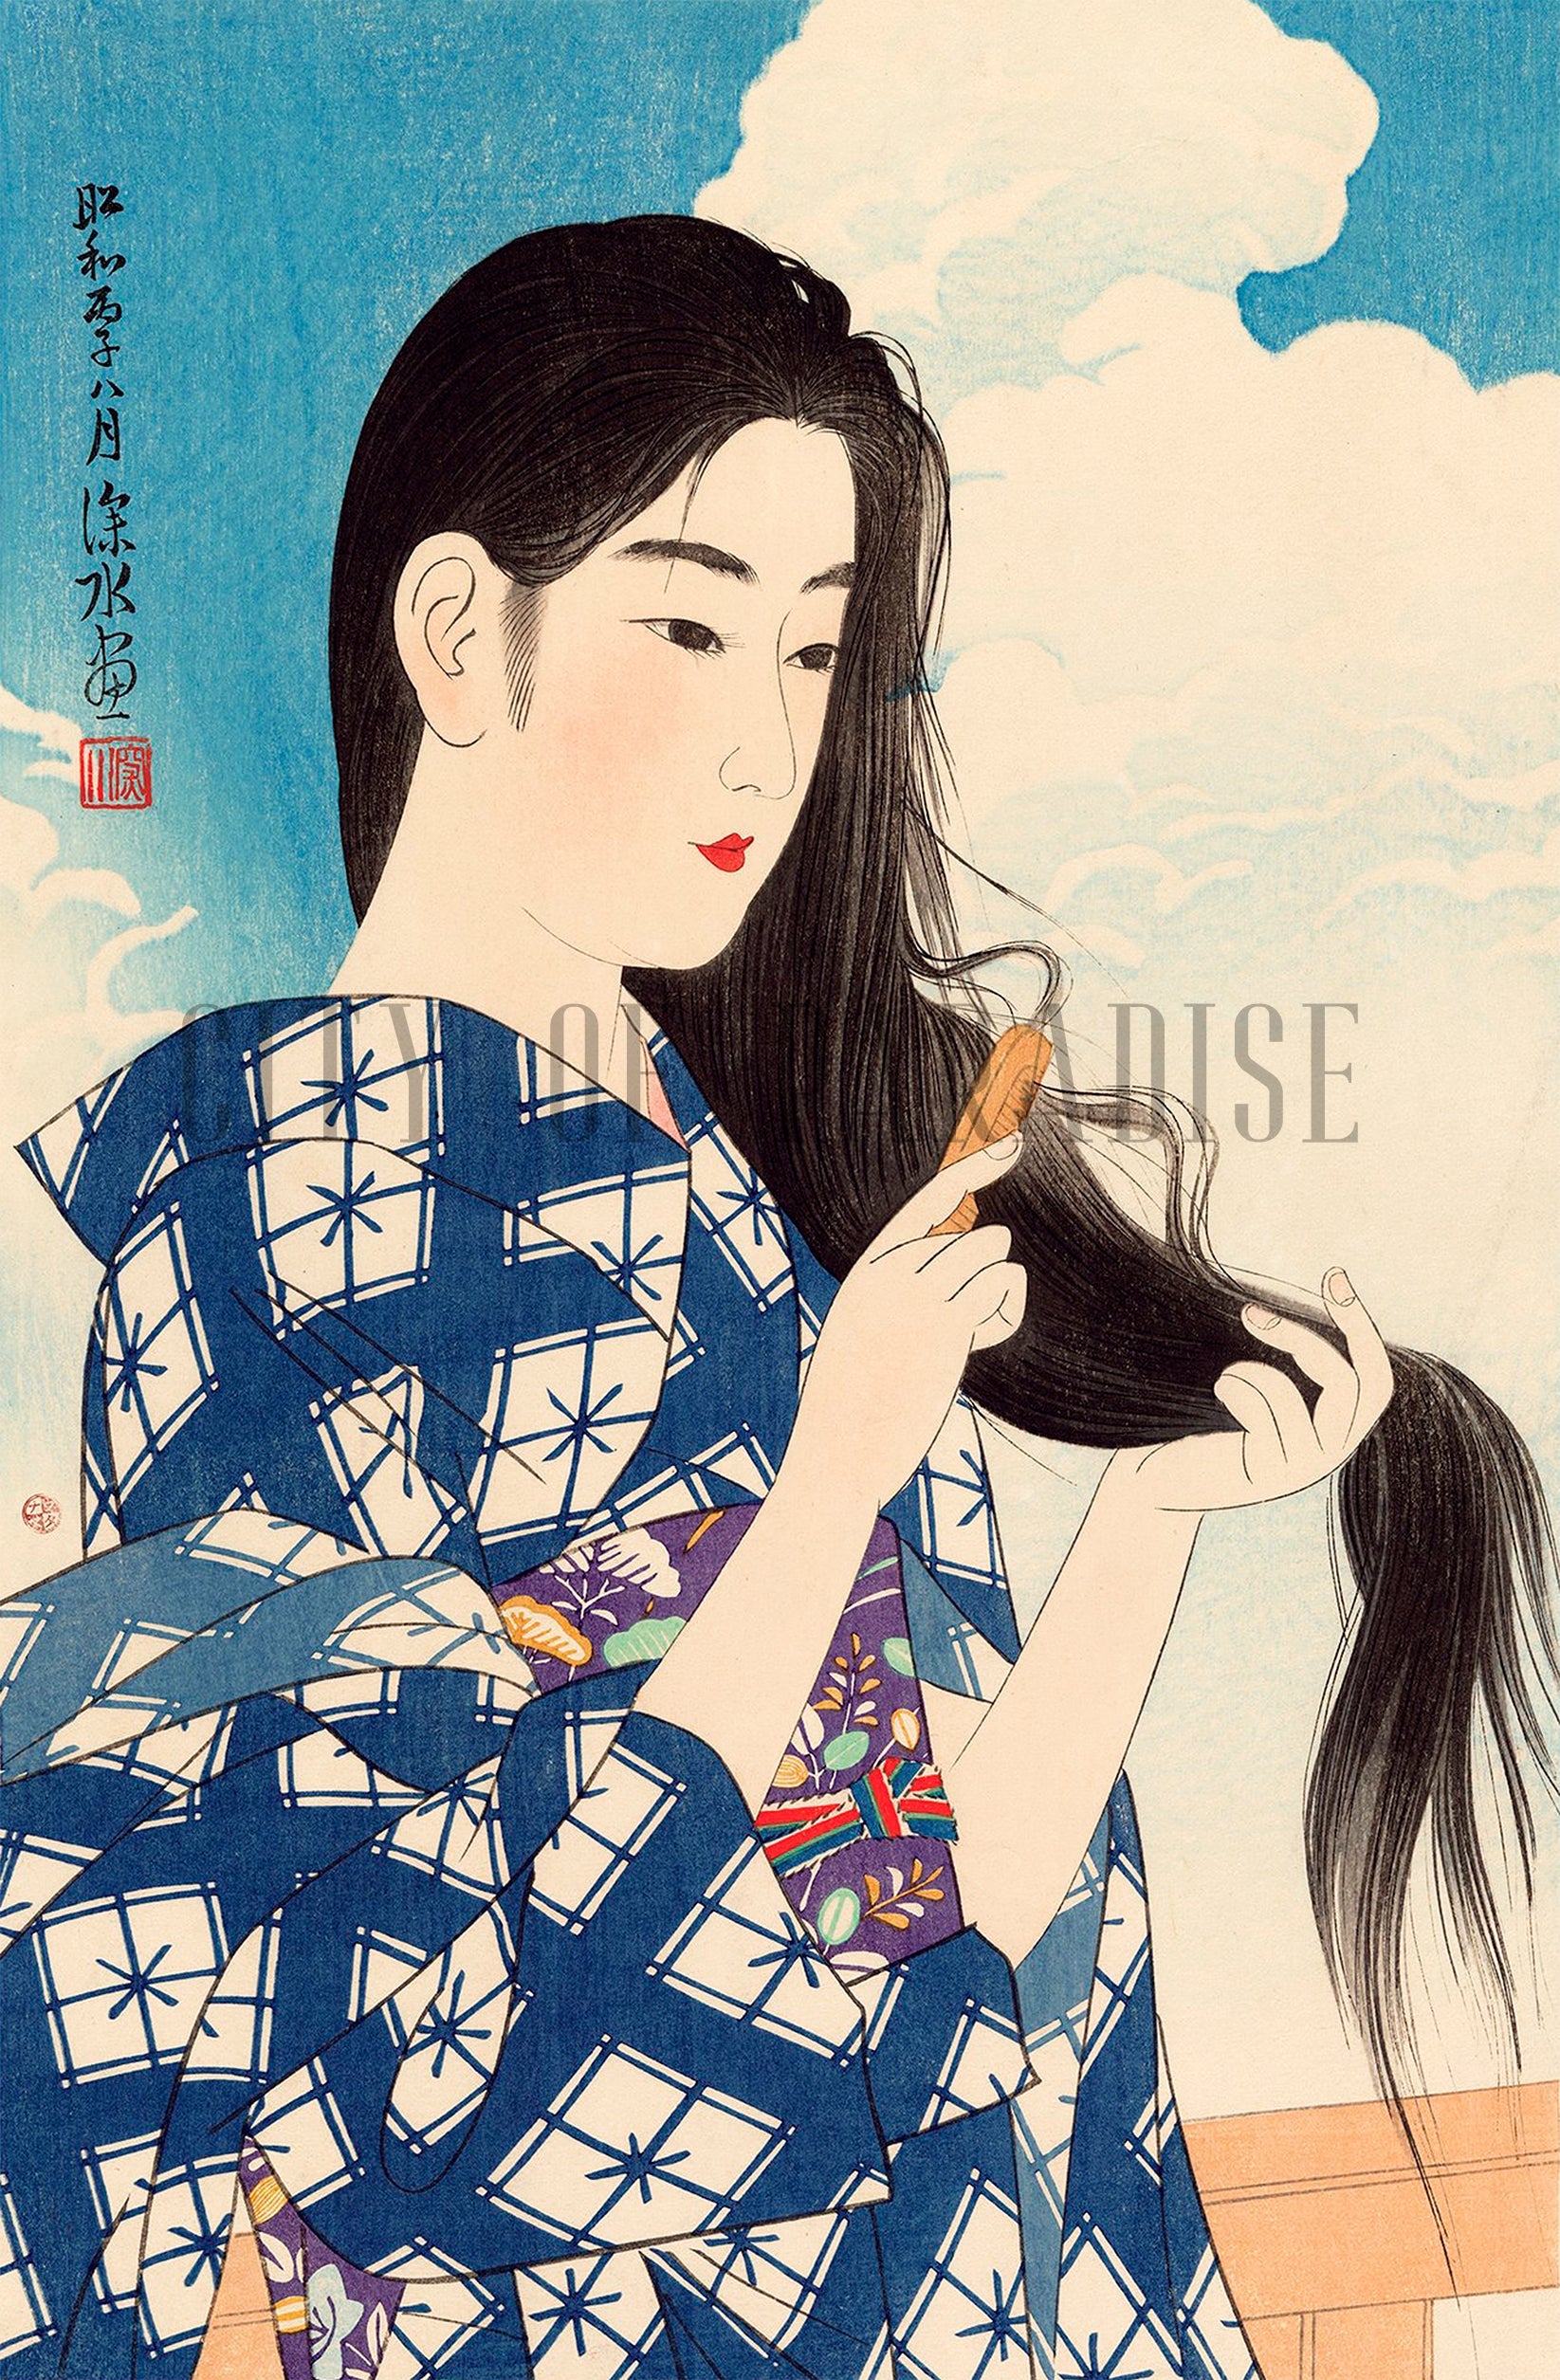 Itō Shinsui Prints